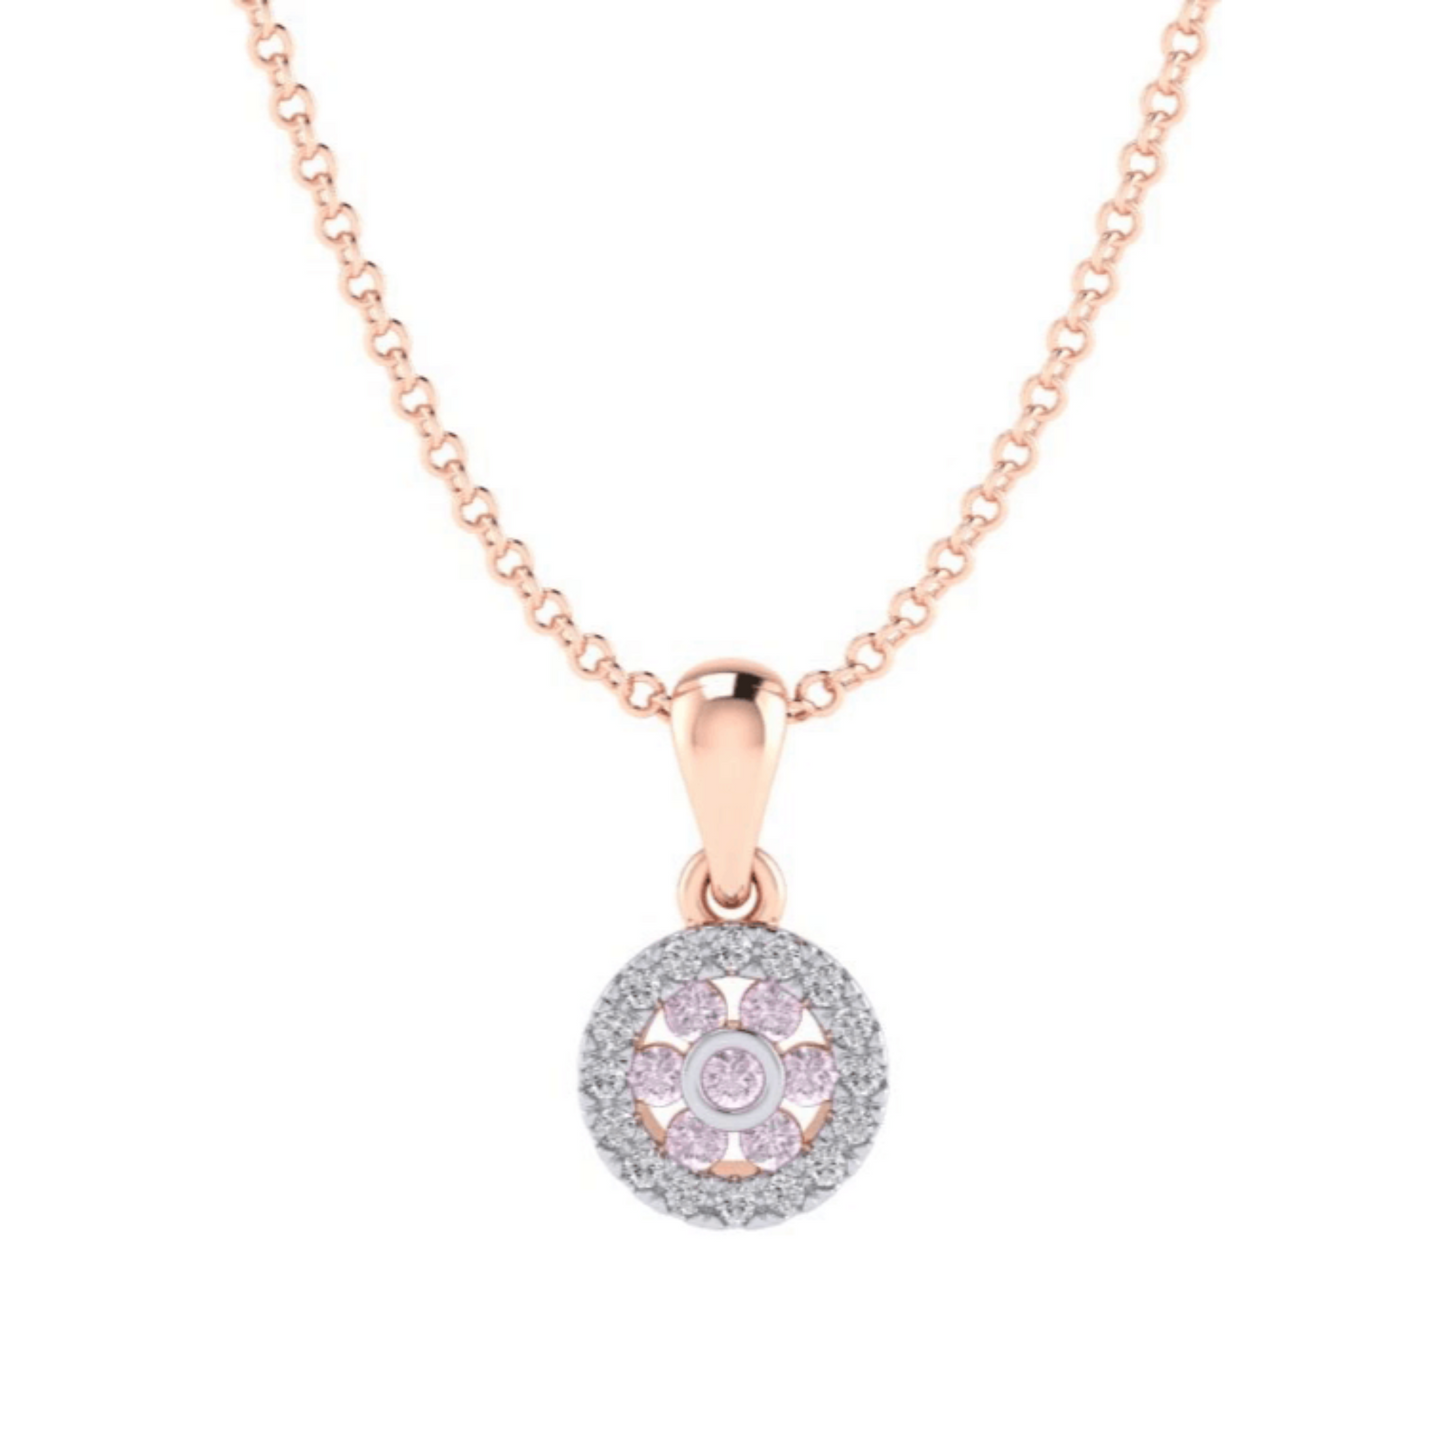 Eminence Pinks Diamond Halo Pendant - Rosendorff Diamond Jewellers